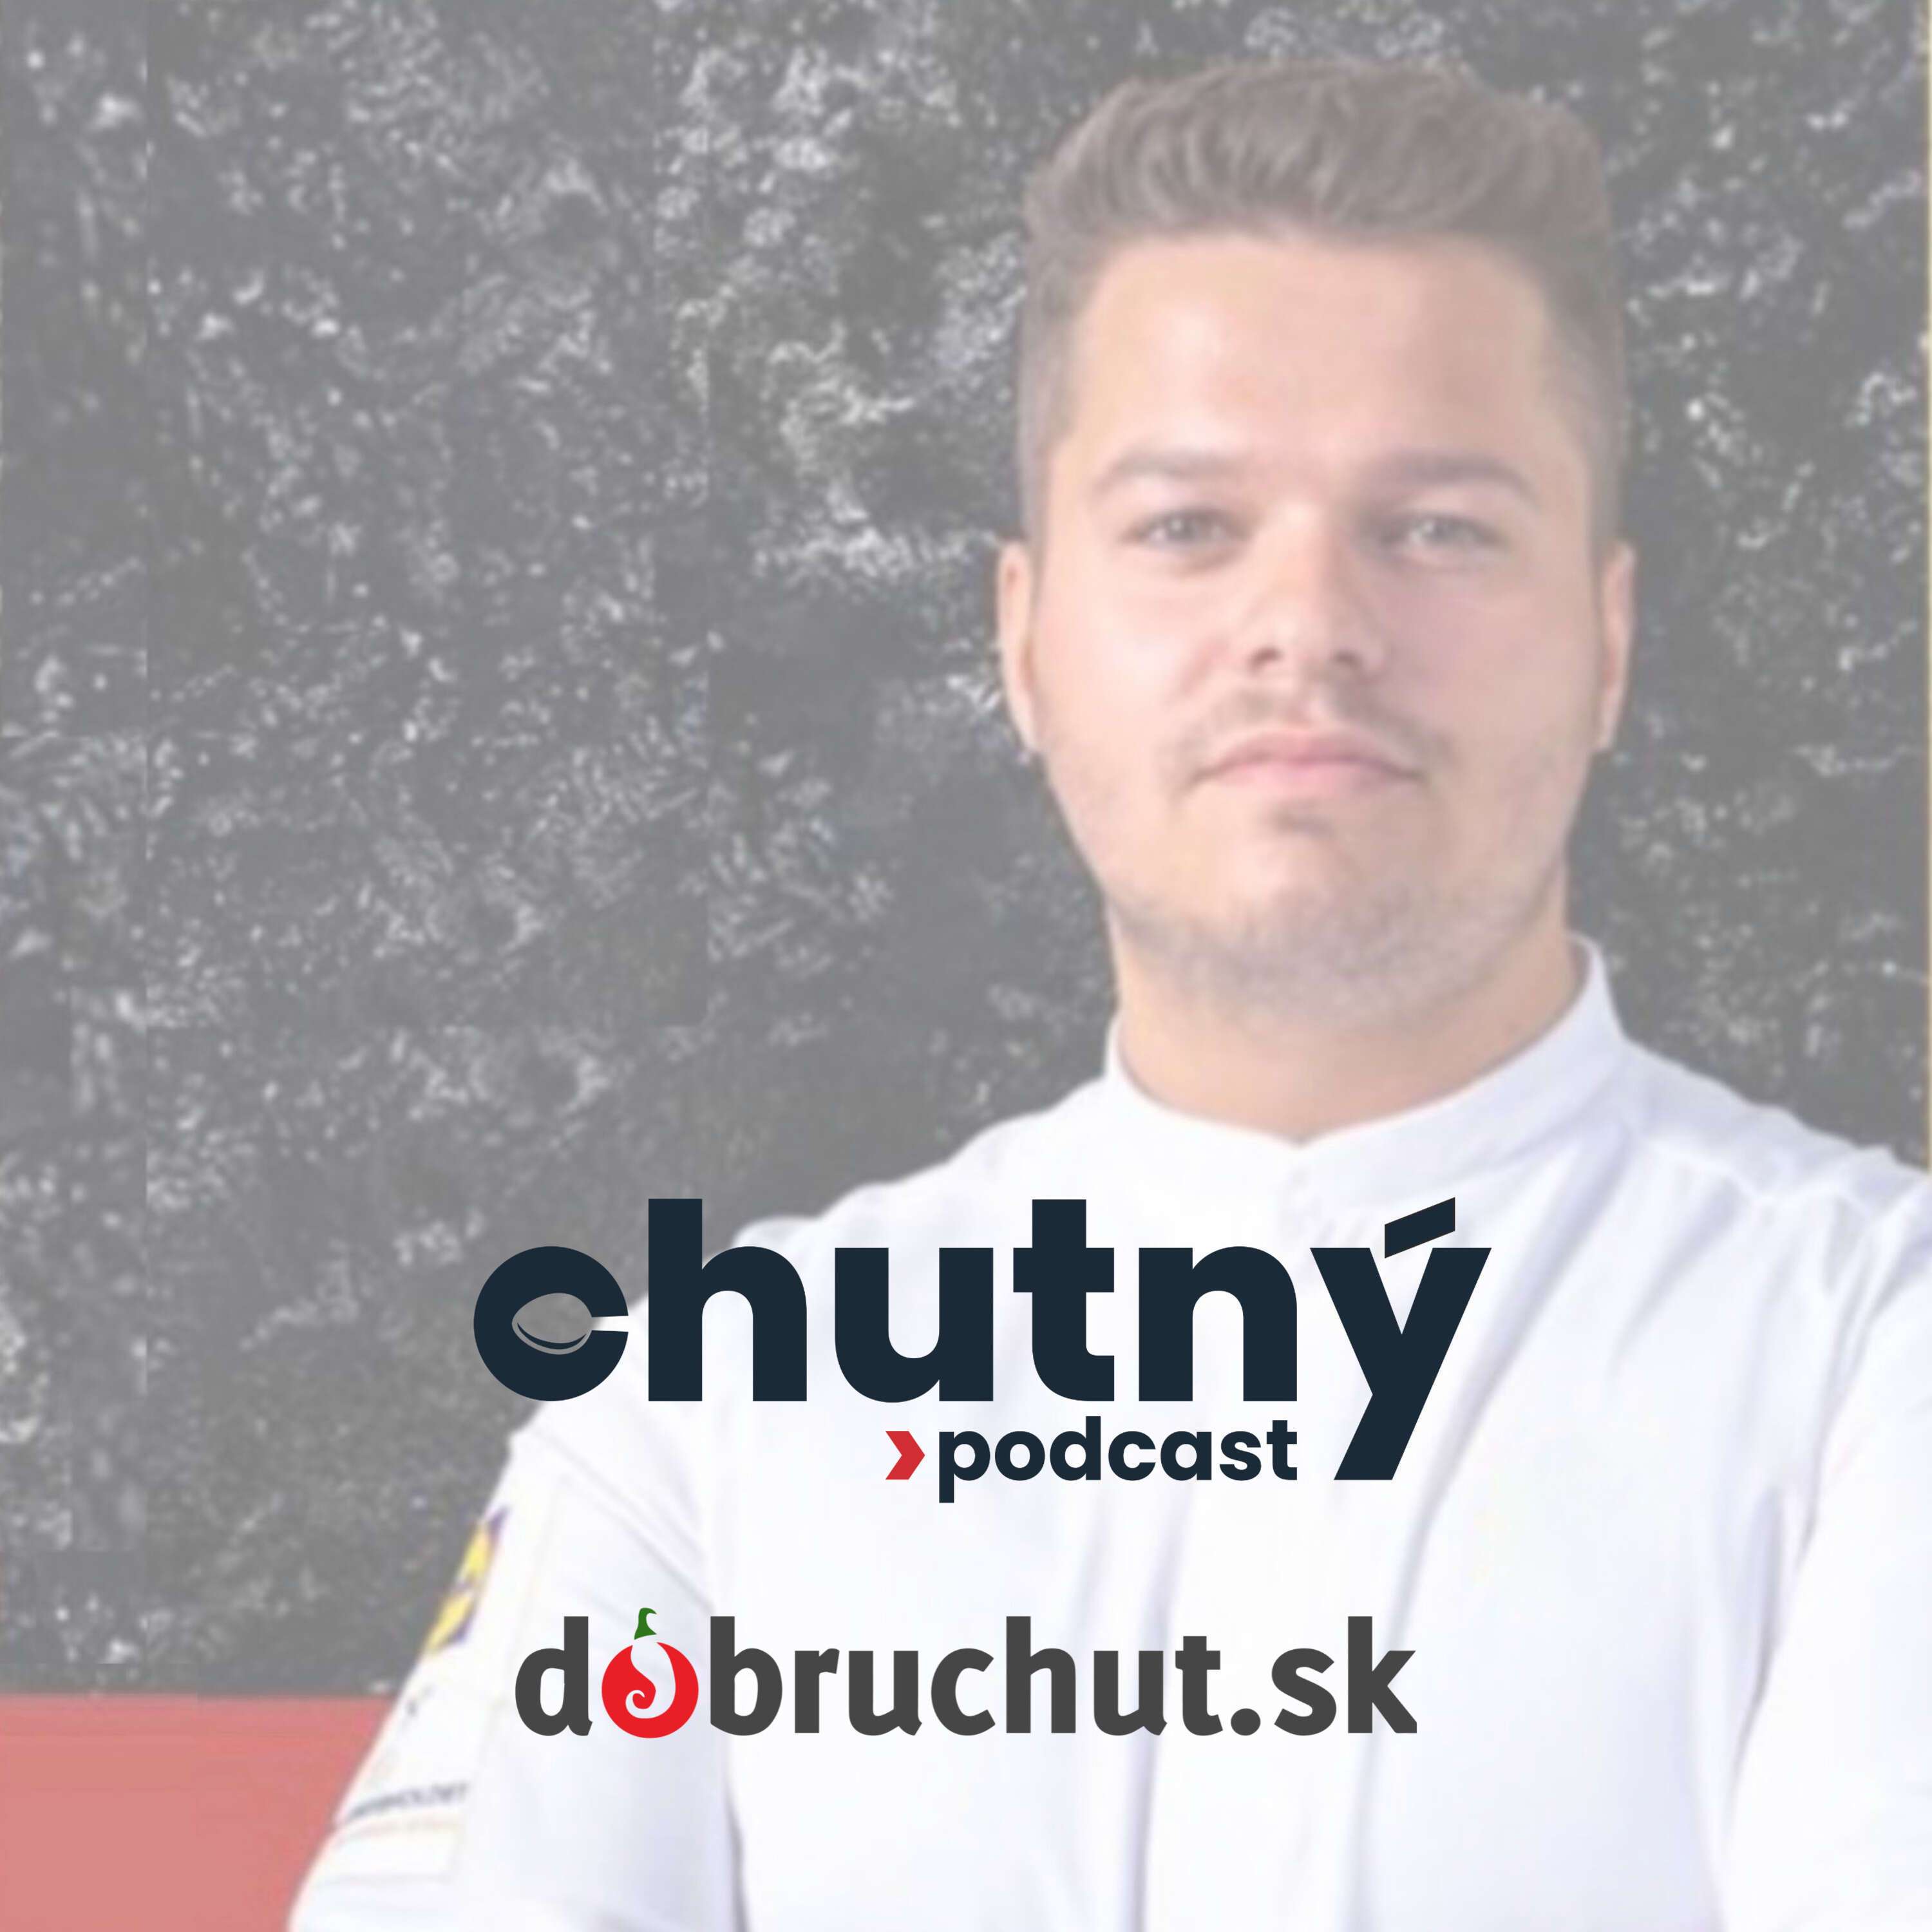 Chutný podcast - Filip Urbanič